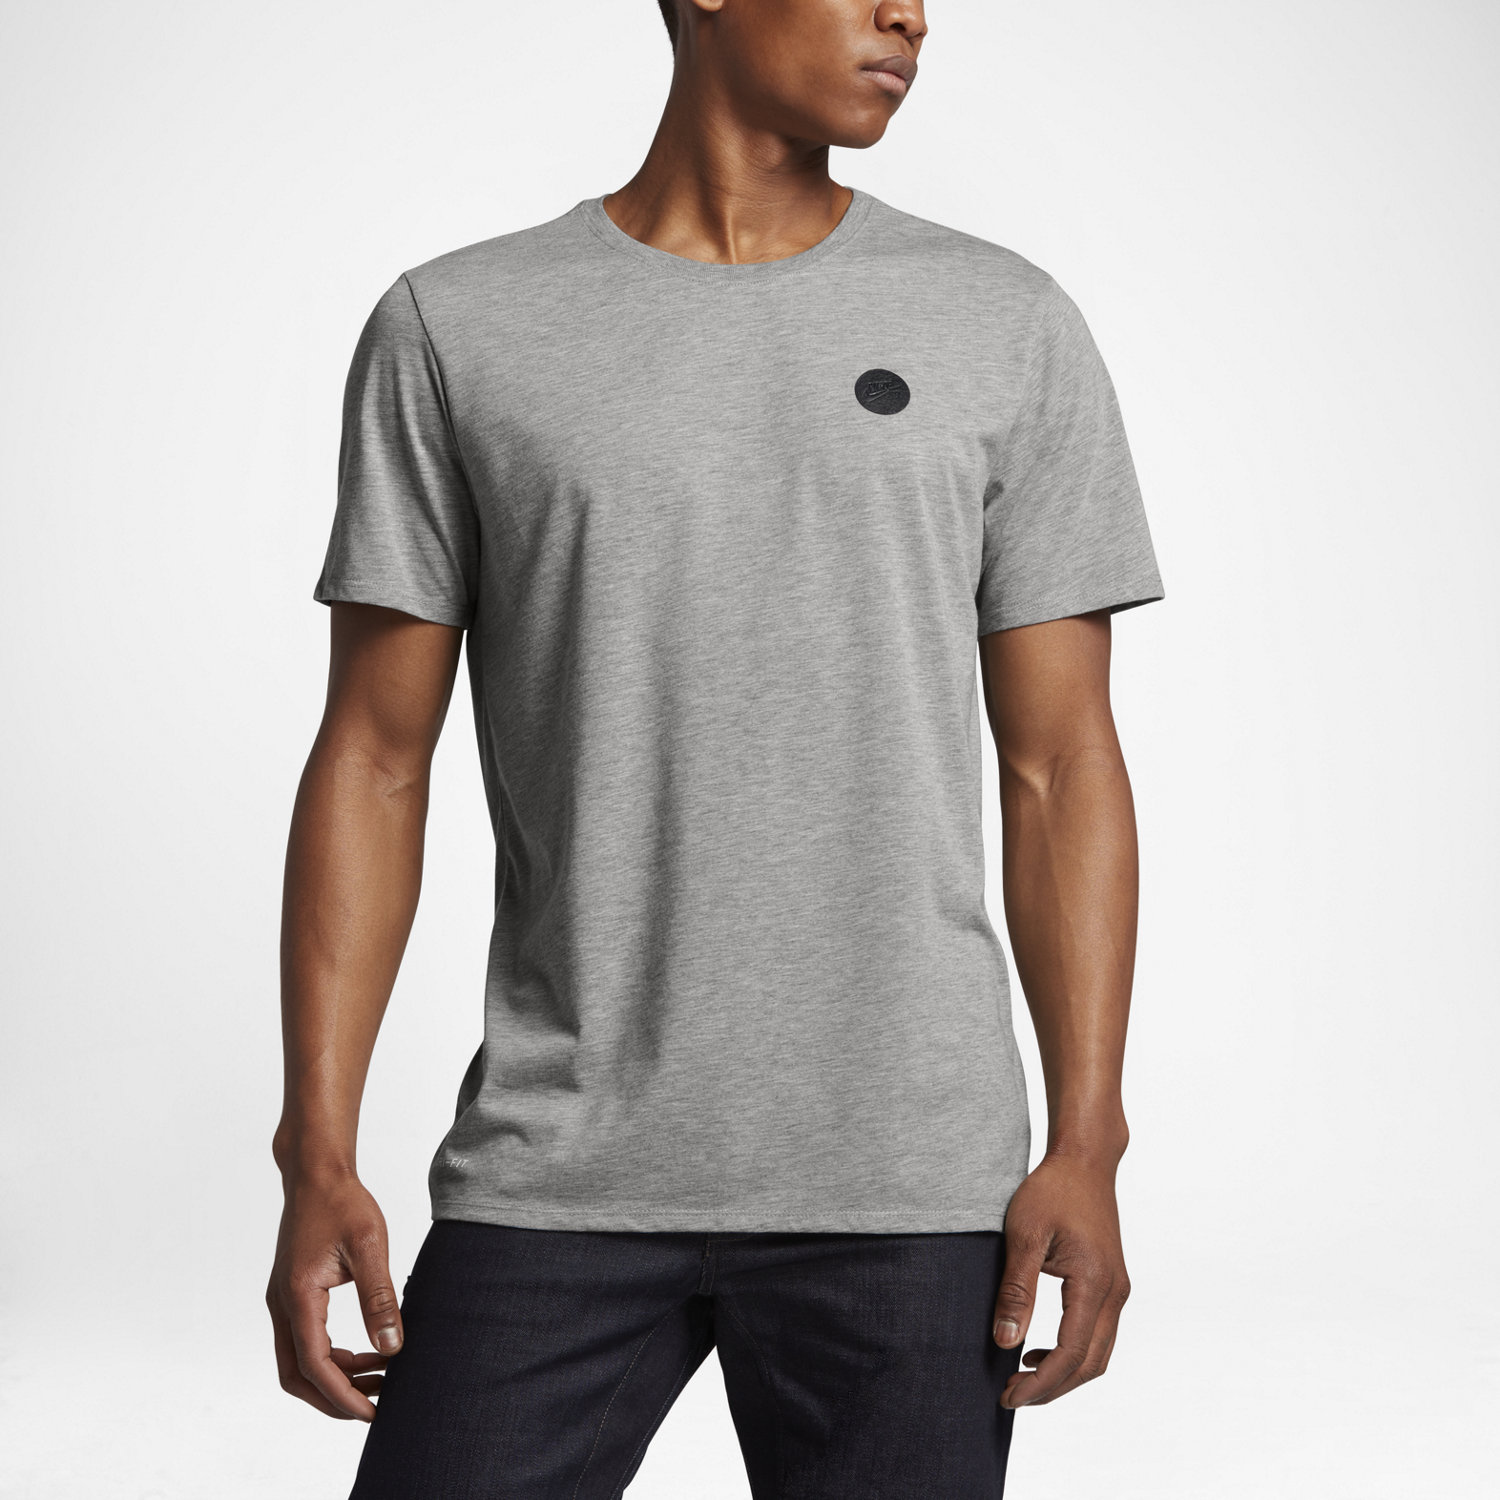 Nike SB Dry - Men's T-Shirt